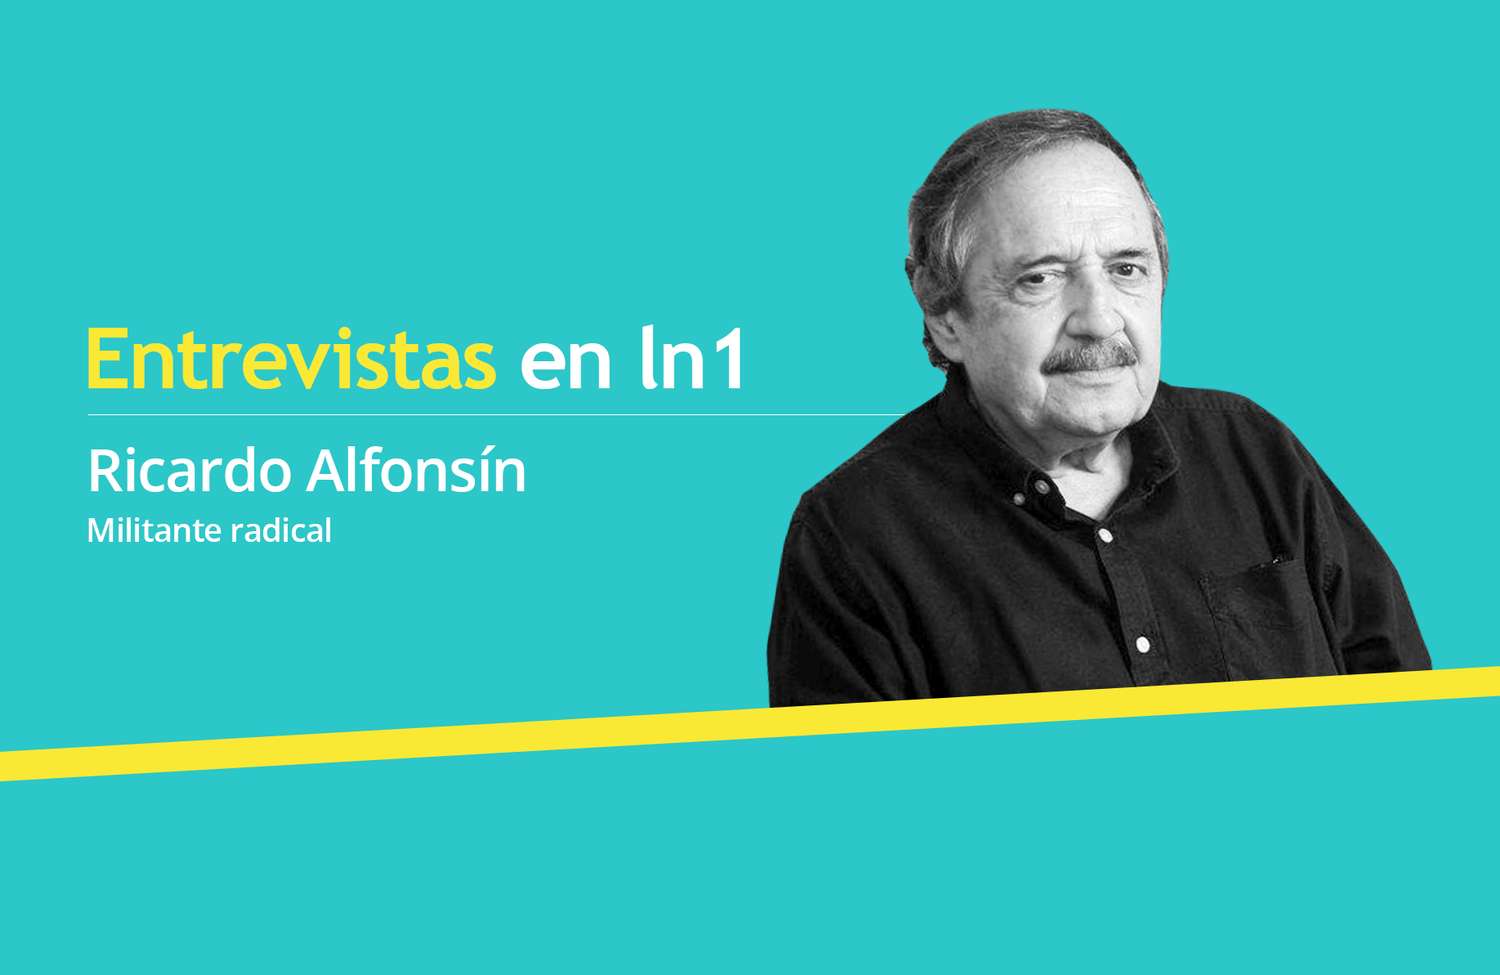 Ricardo Alfonsín: "La UCR sacrificó su identidad por un acuerdo electoral pero al que le piden explicaciones es a mí" 